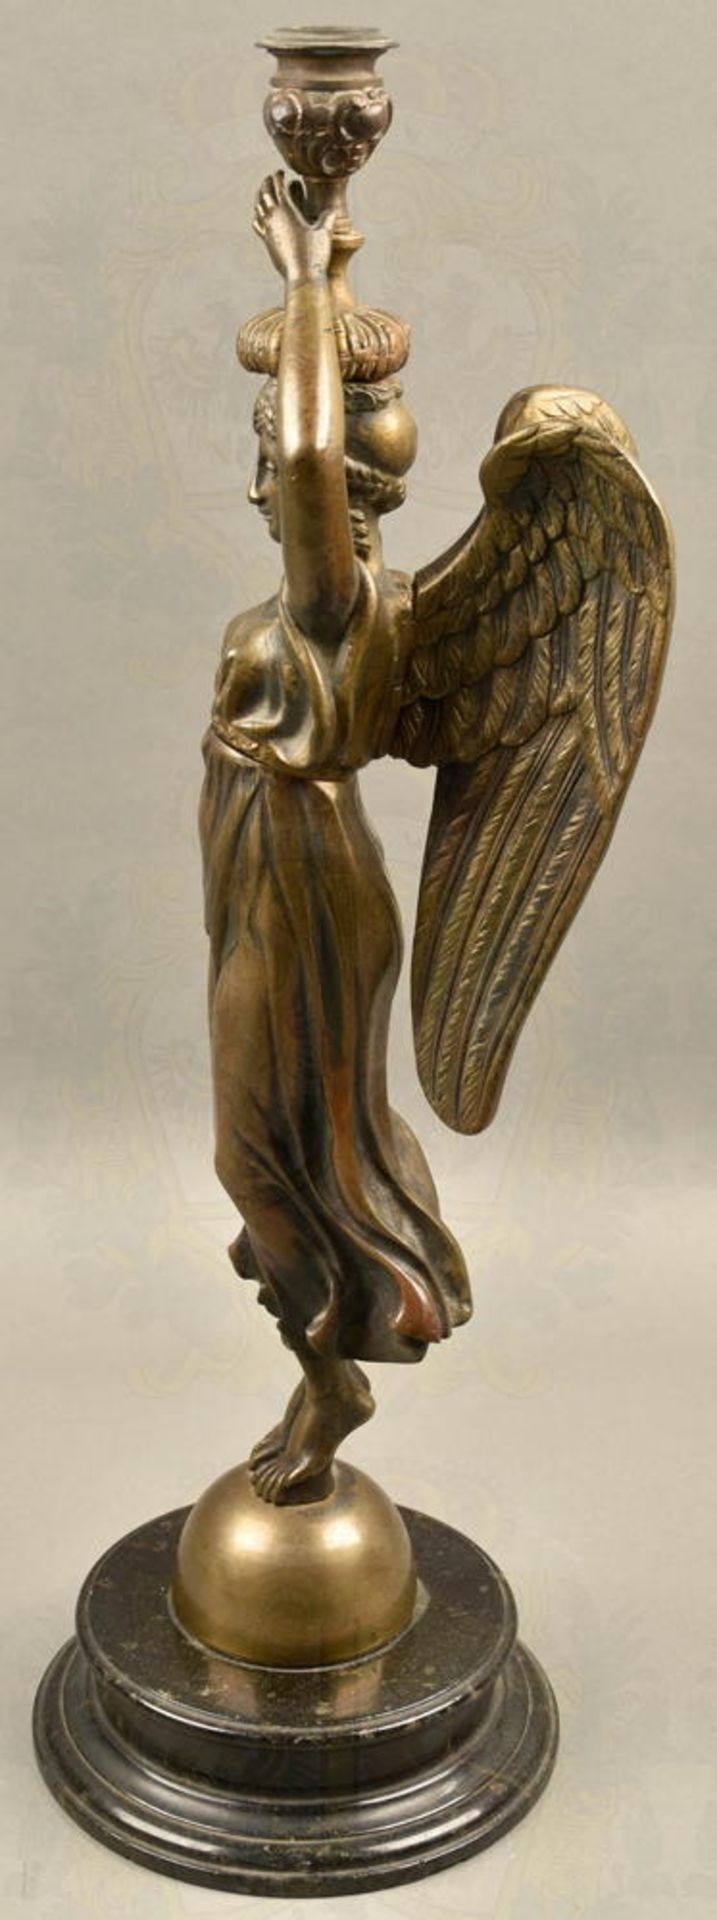 Bronzeplastik Engel mit Kerzenhalter auf Steinsockel - Bild 2 aus 4